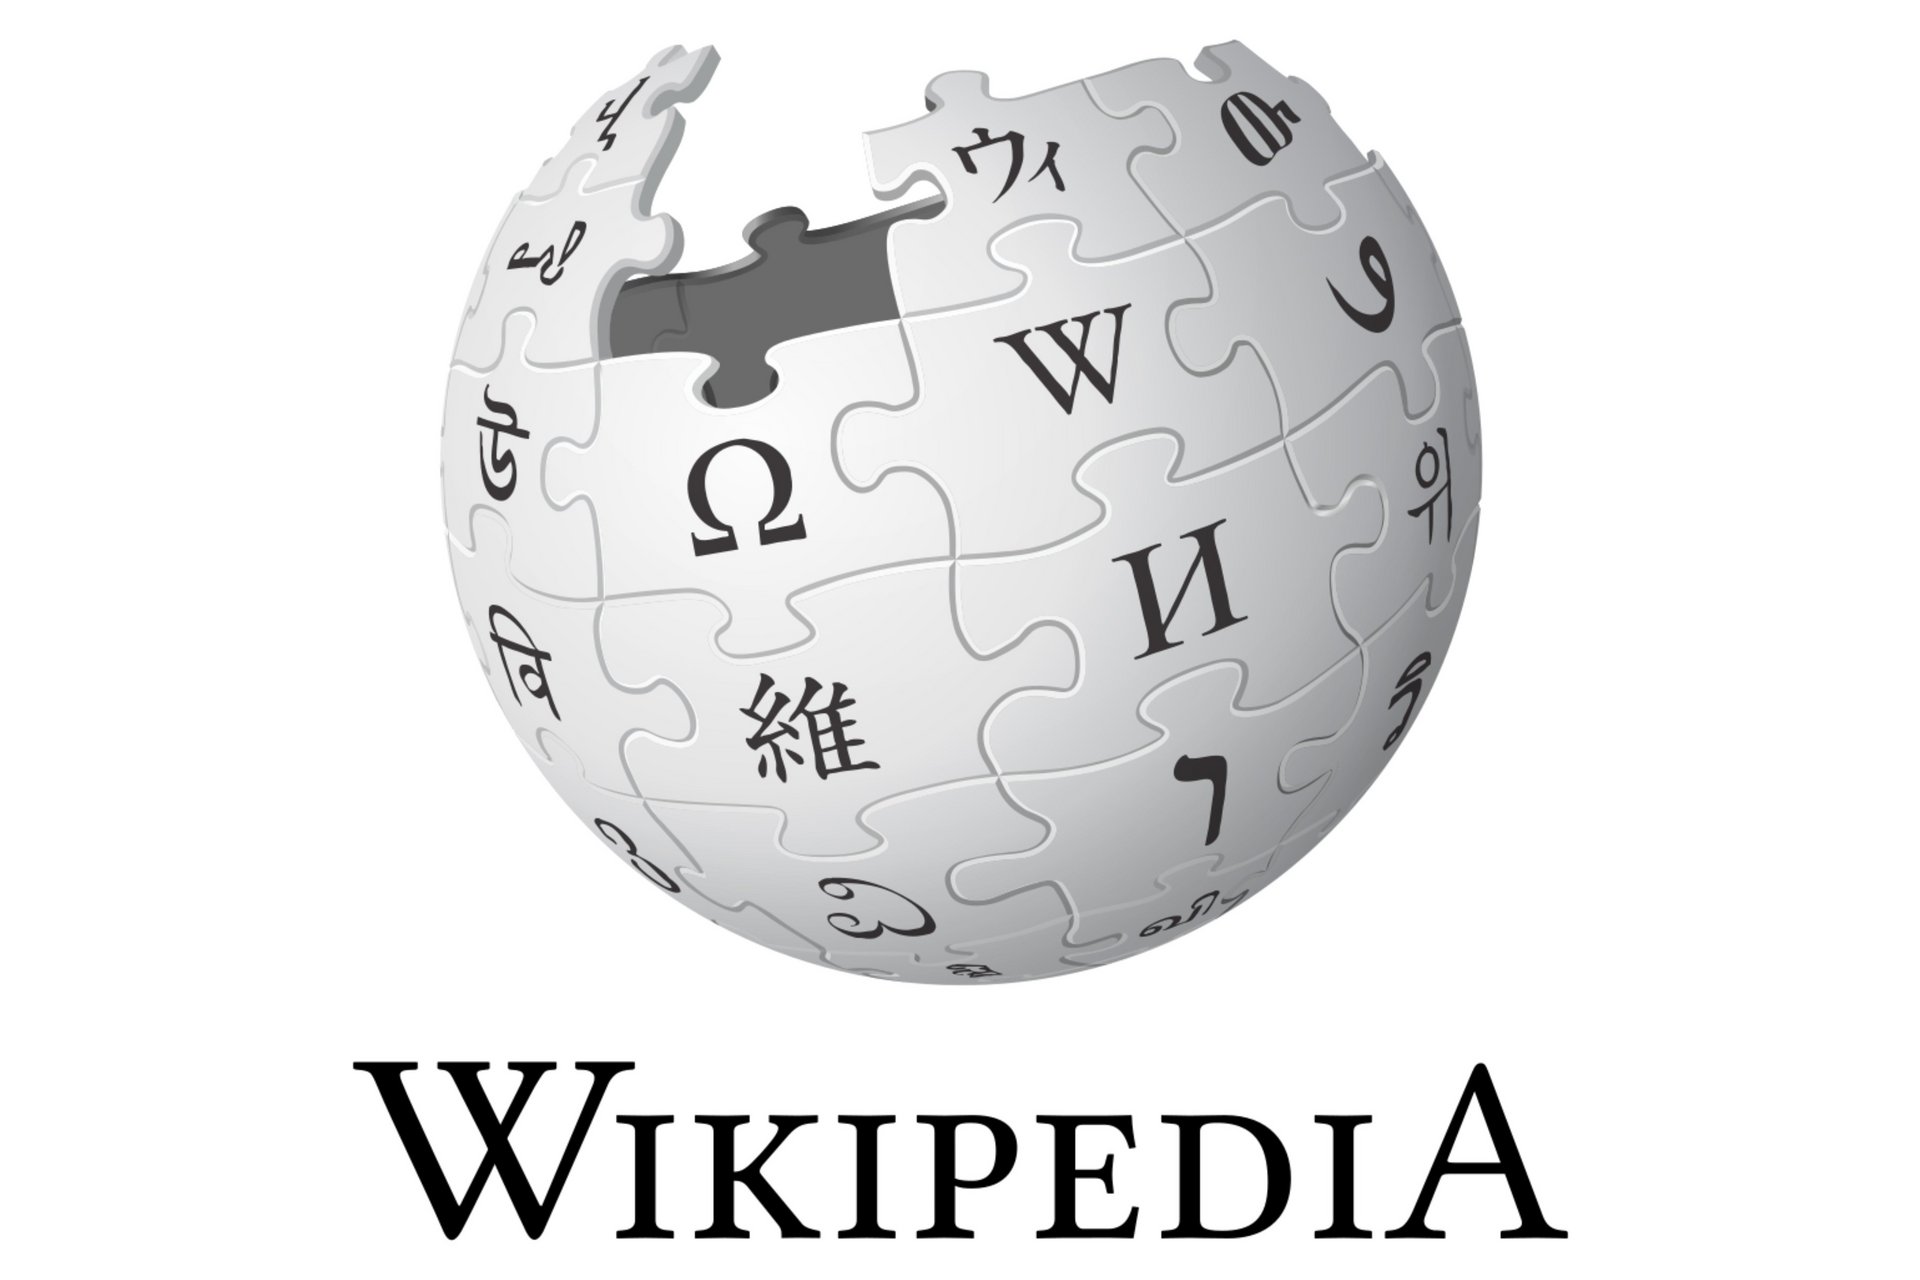 Bild- und Wortmarke Wikipedia